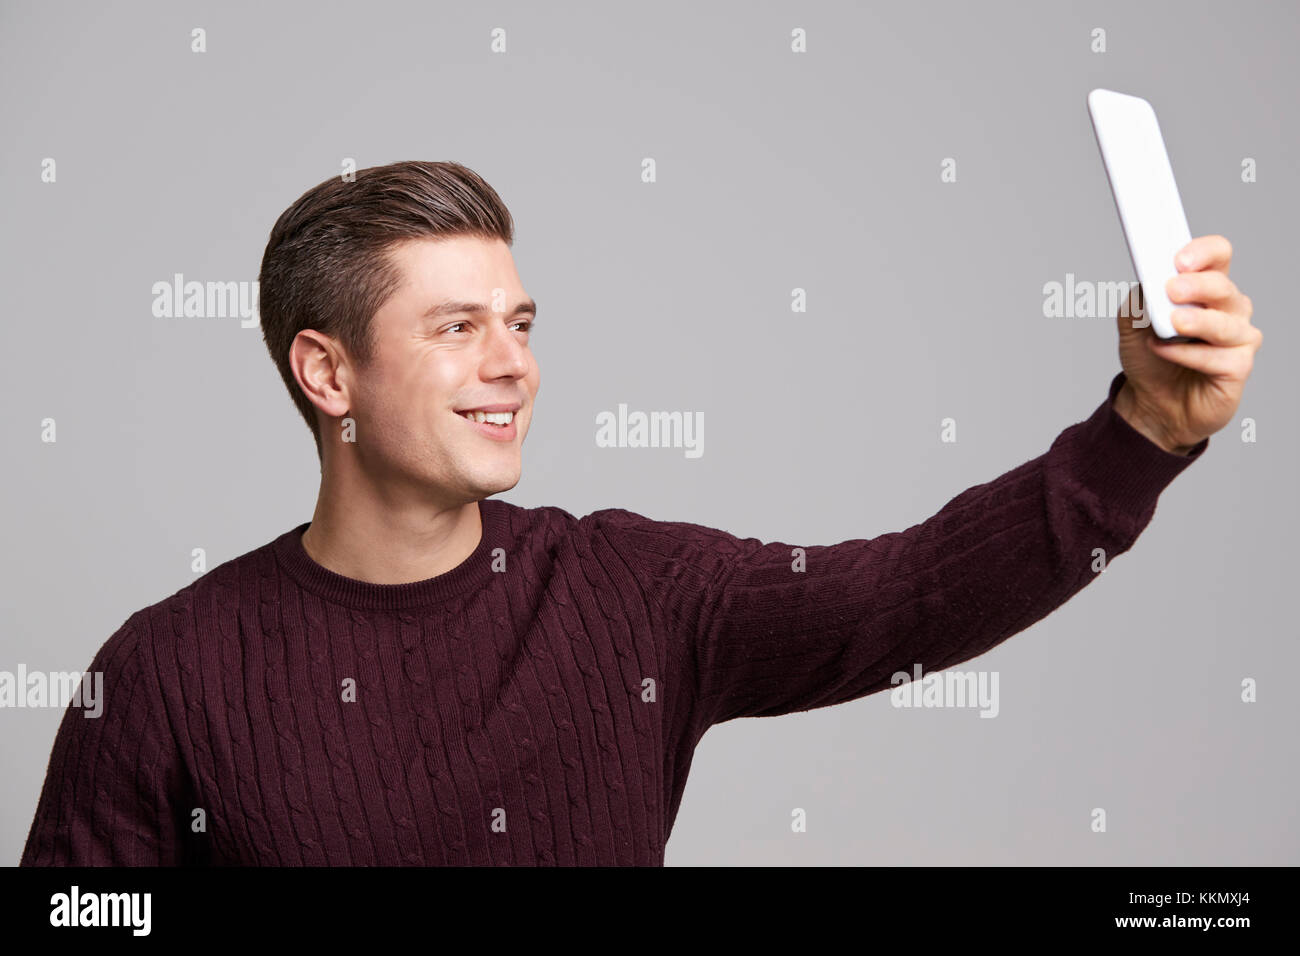 Ein lächelnder junger Mann eine selfie mit seinem Smartphone Stockfoto